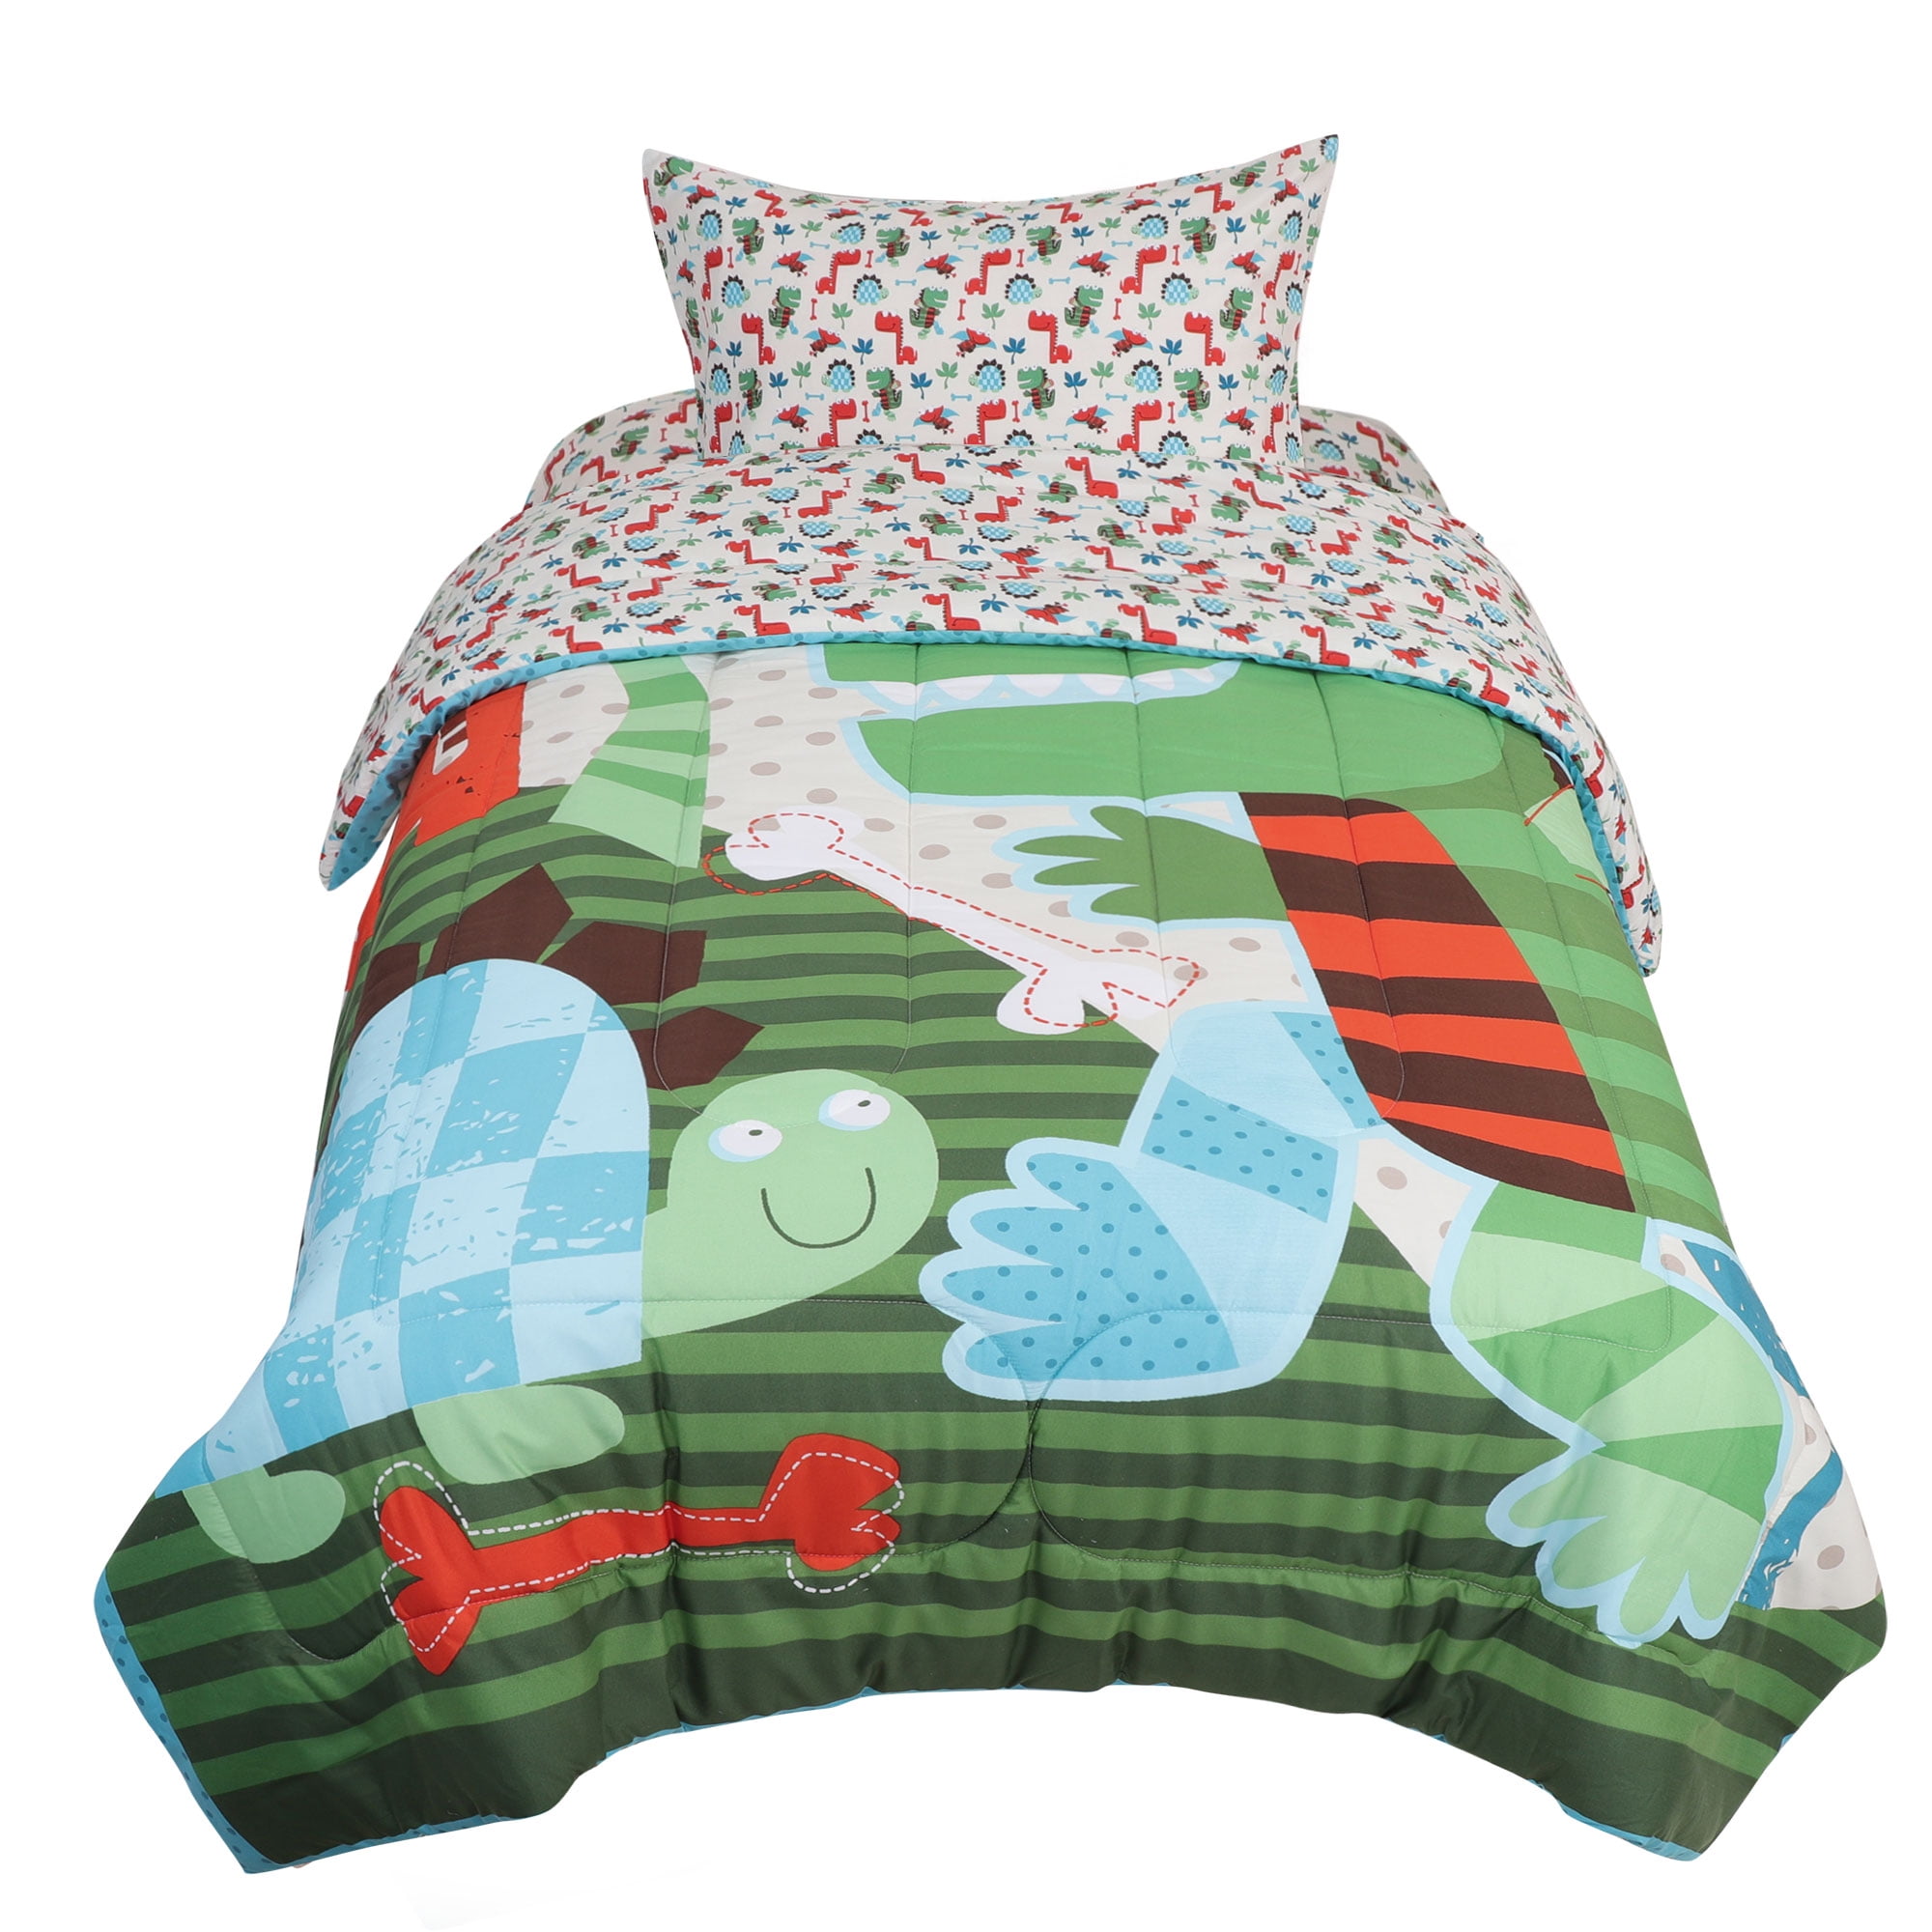 Details about   Five Piece Reversible Dinosaur Comforter Multicolor Bedding Set Twin  